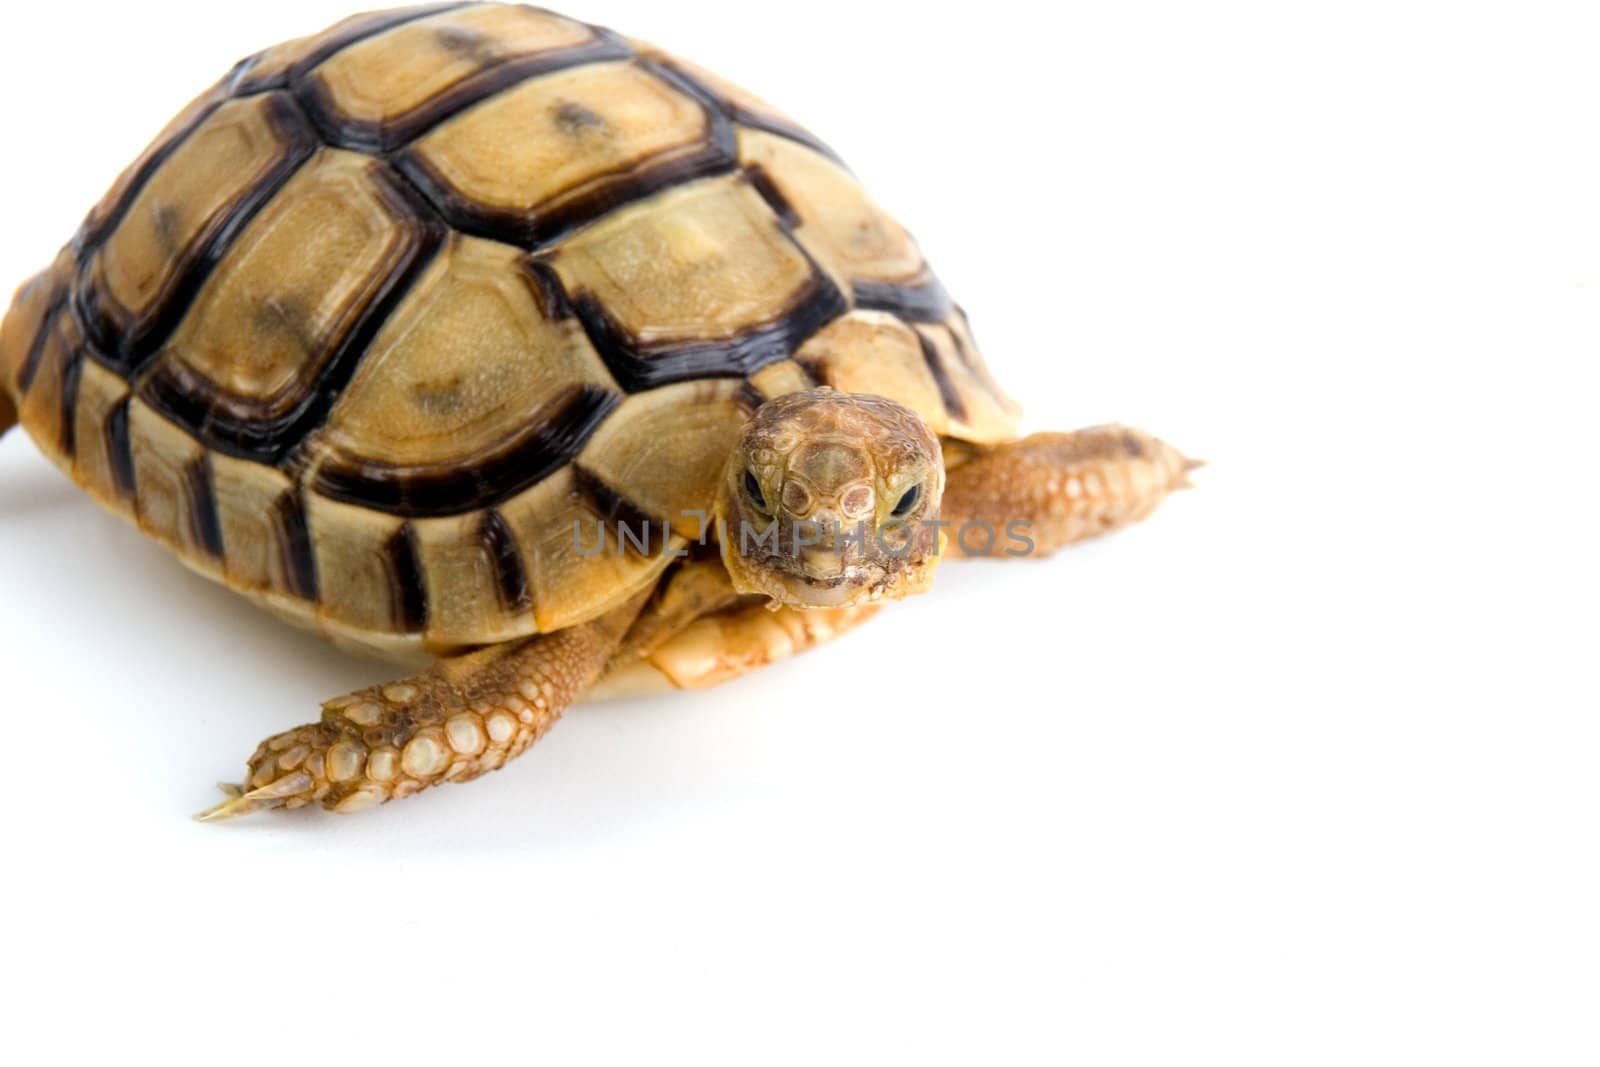 Little tortoise by Vladimir